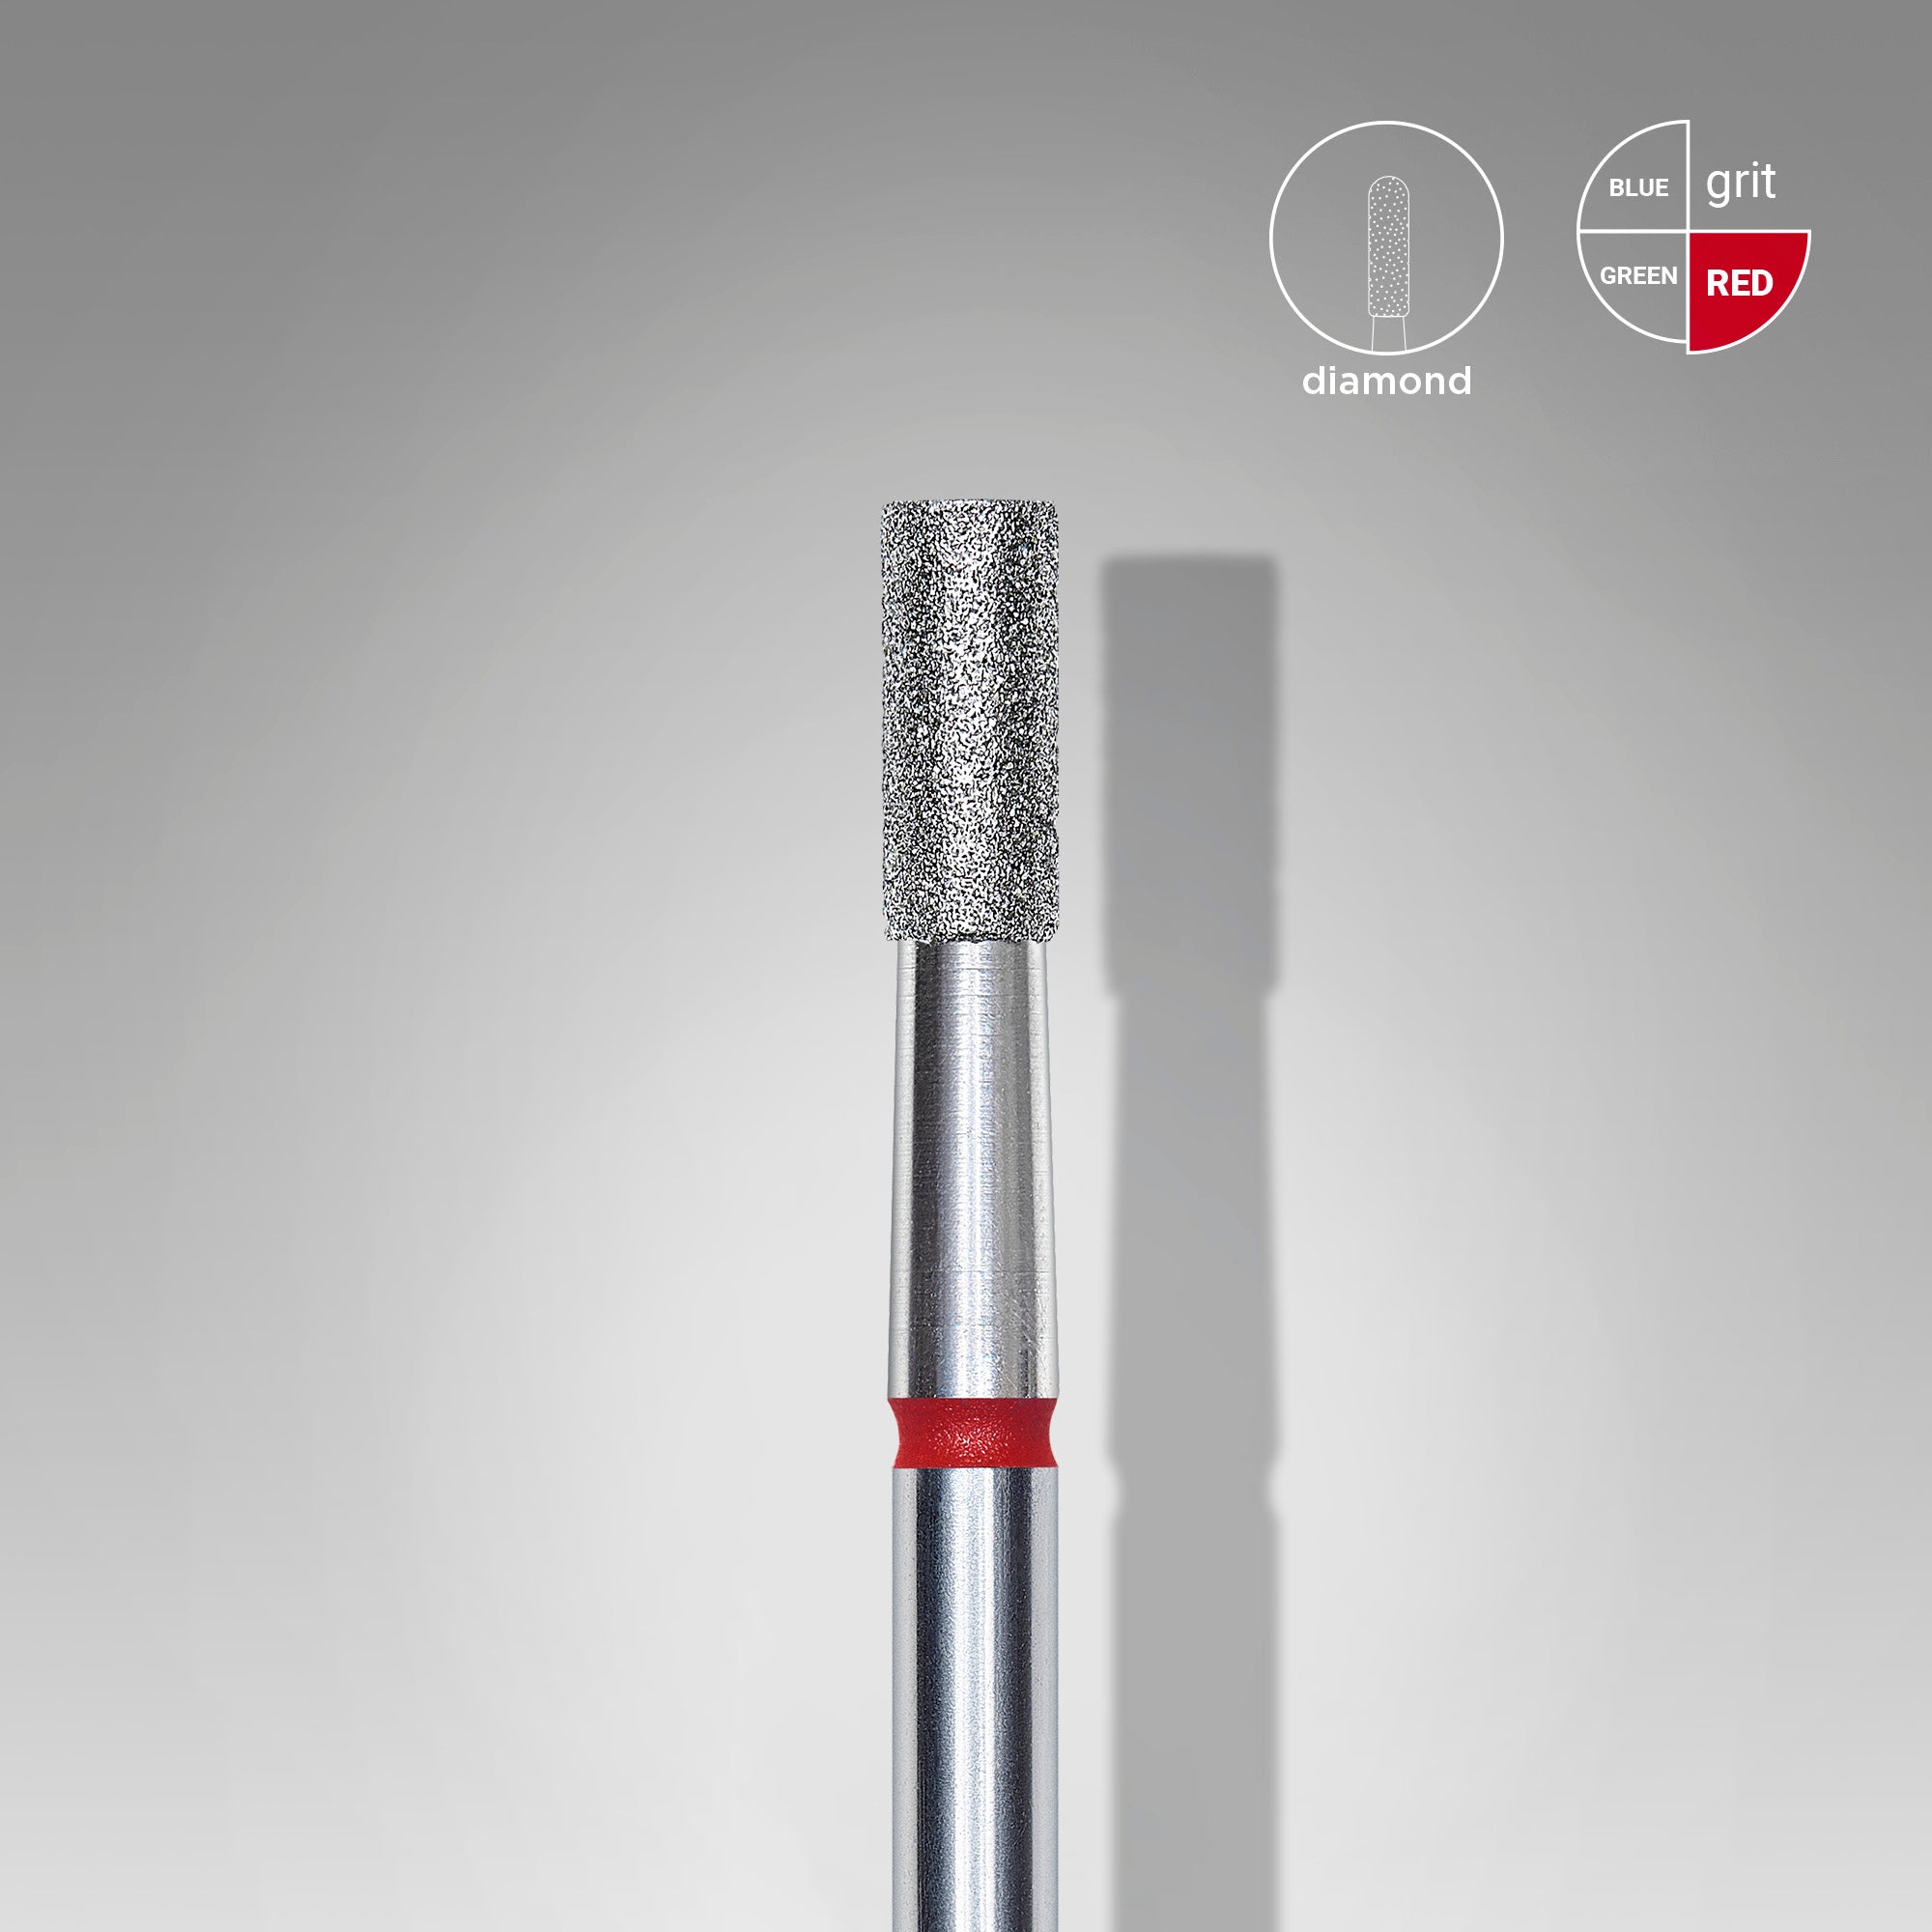 Фреза алмазная Staleks FA20R025/6 цилиндр диаметр 2.5 мм рабочая часть 6 мм Красная (мягкая)